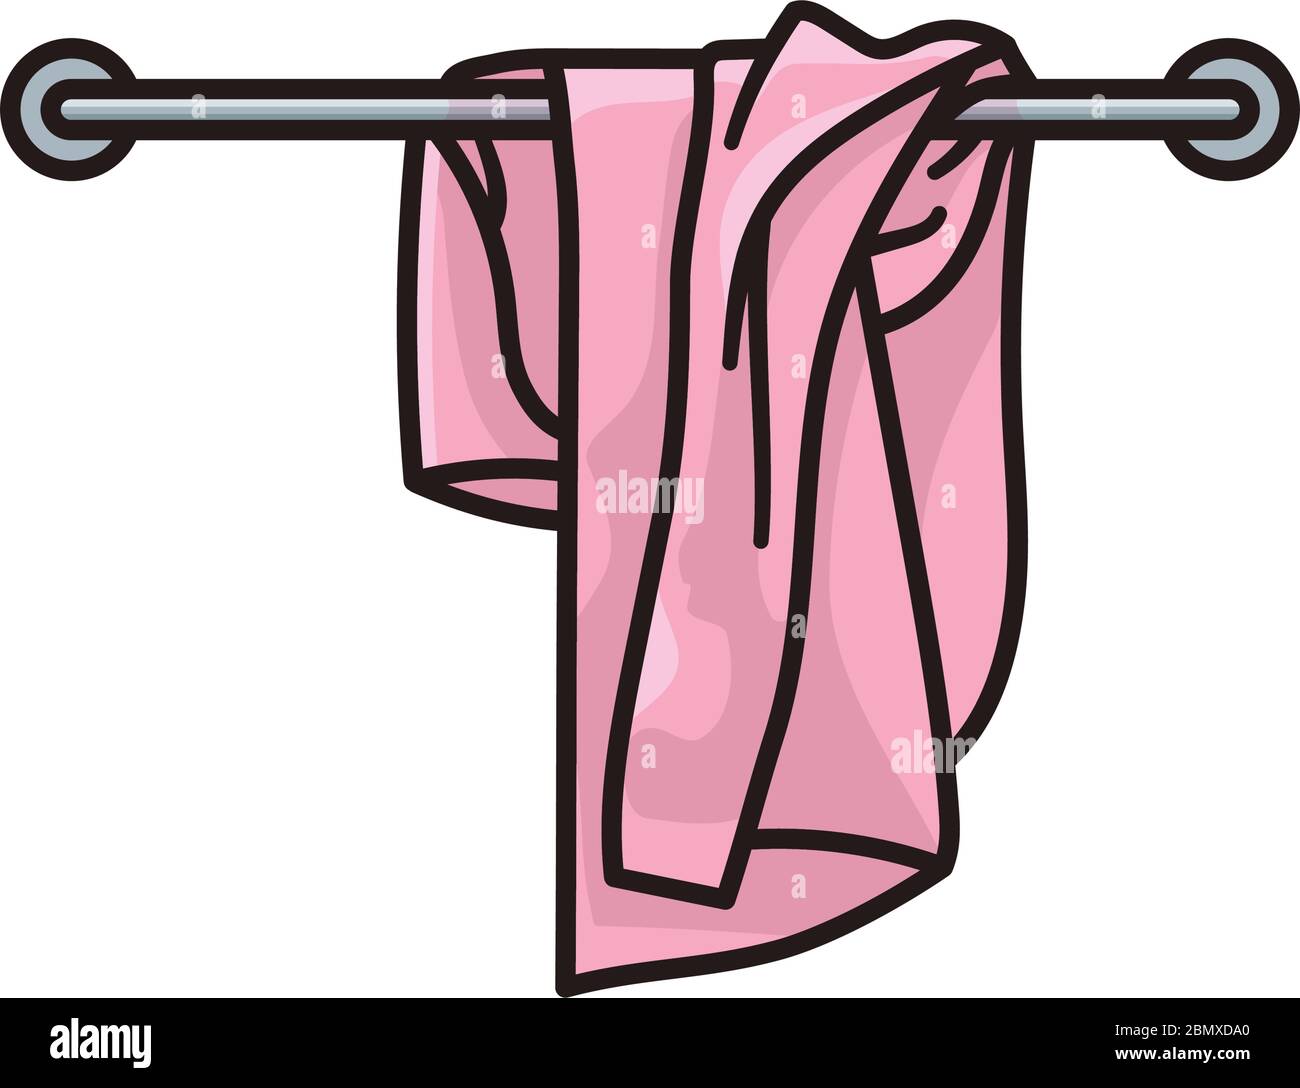 Asciugamano usato sul portasciugamani isolato illustrazione vettoriale per il giorno degli asciugamani il 25 maggio. Simbolo di pulizia o lavanderia sporca Illustrazione Vettoriale